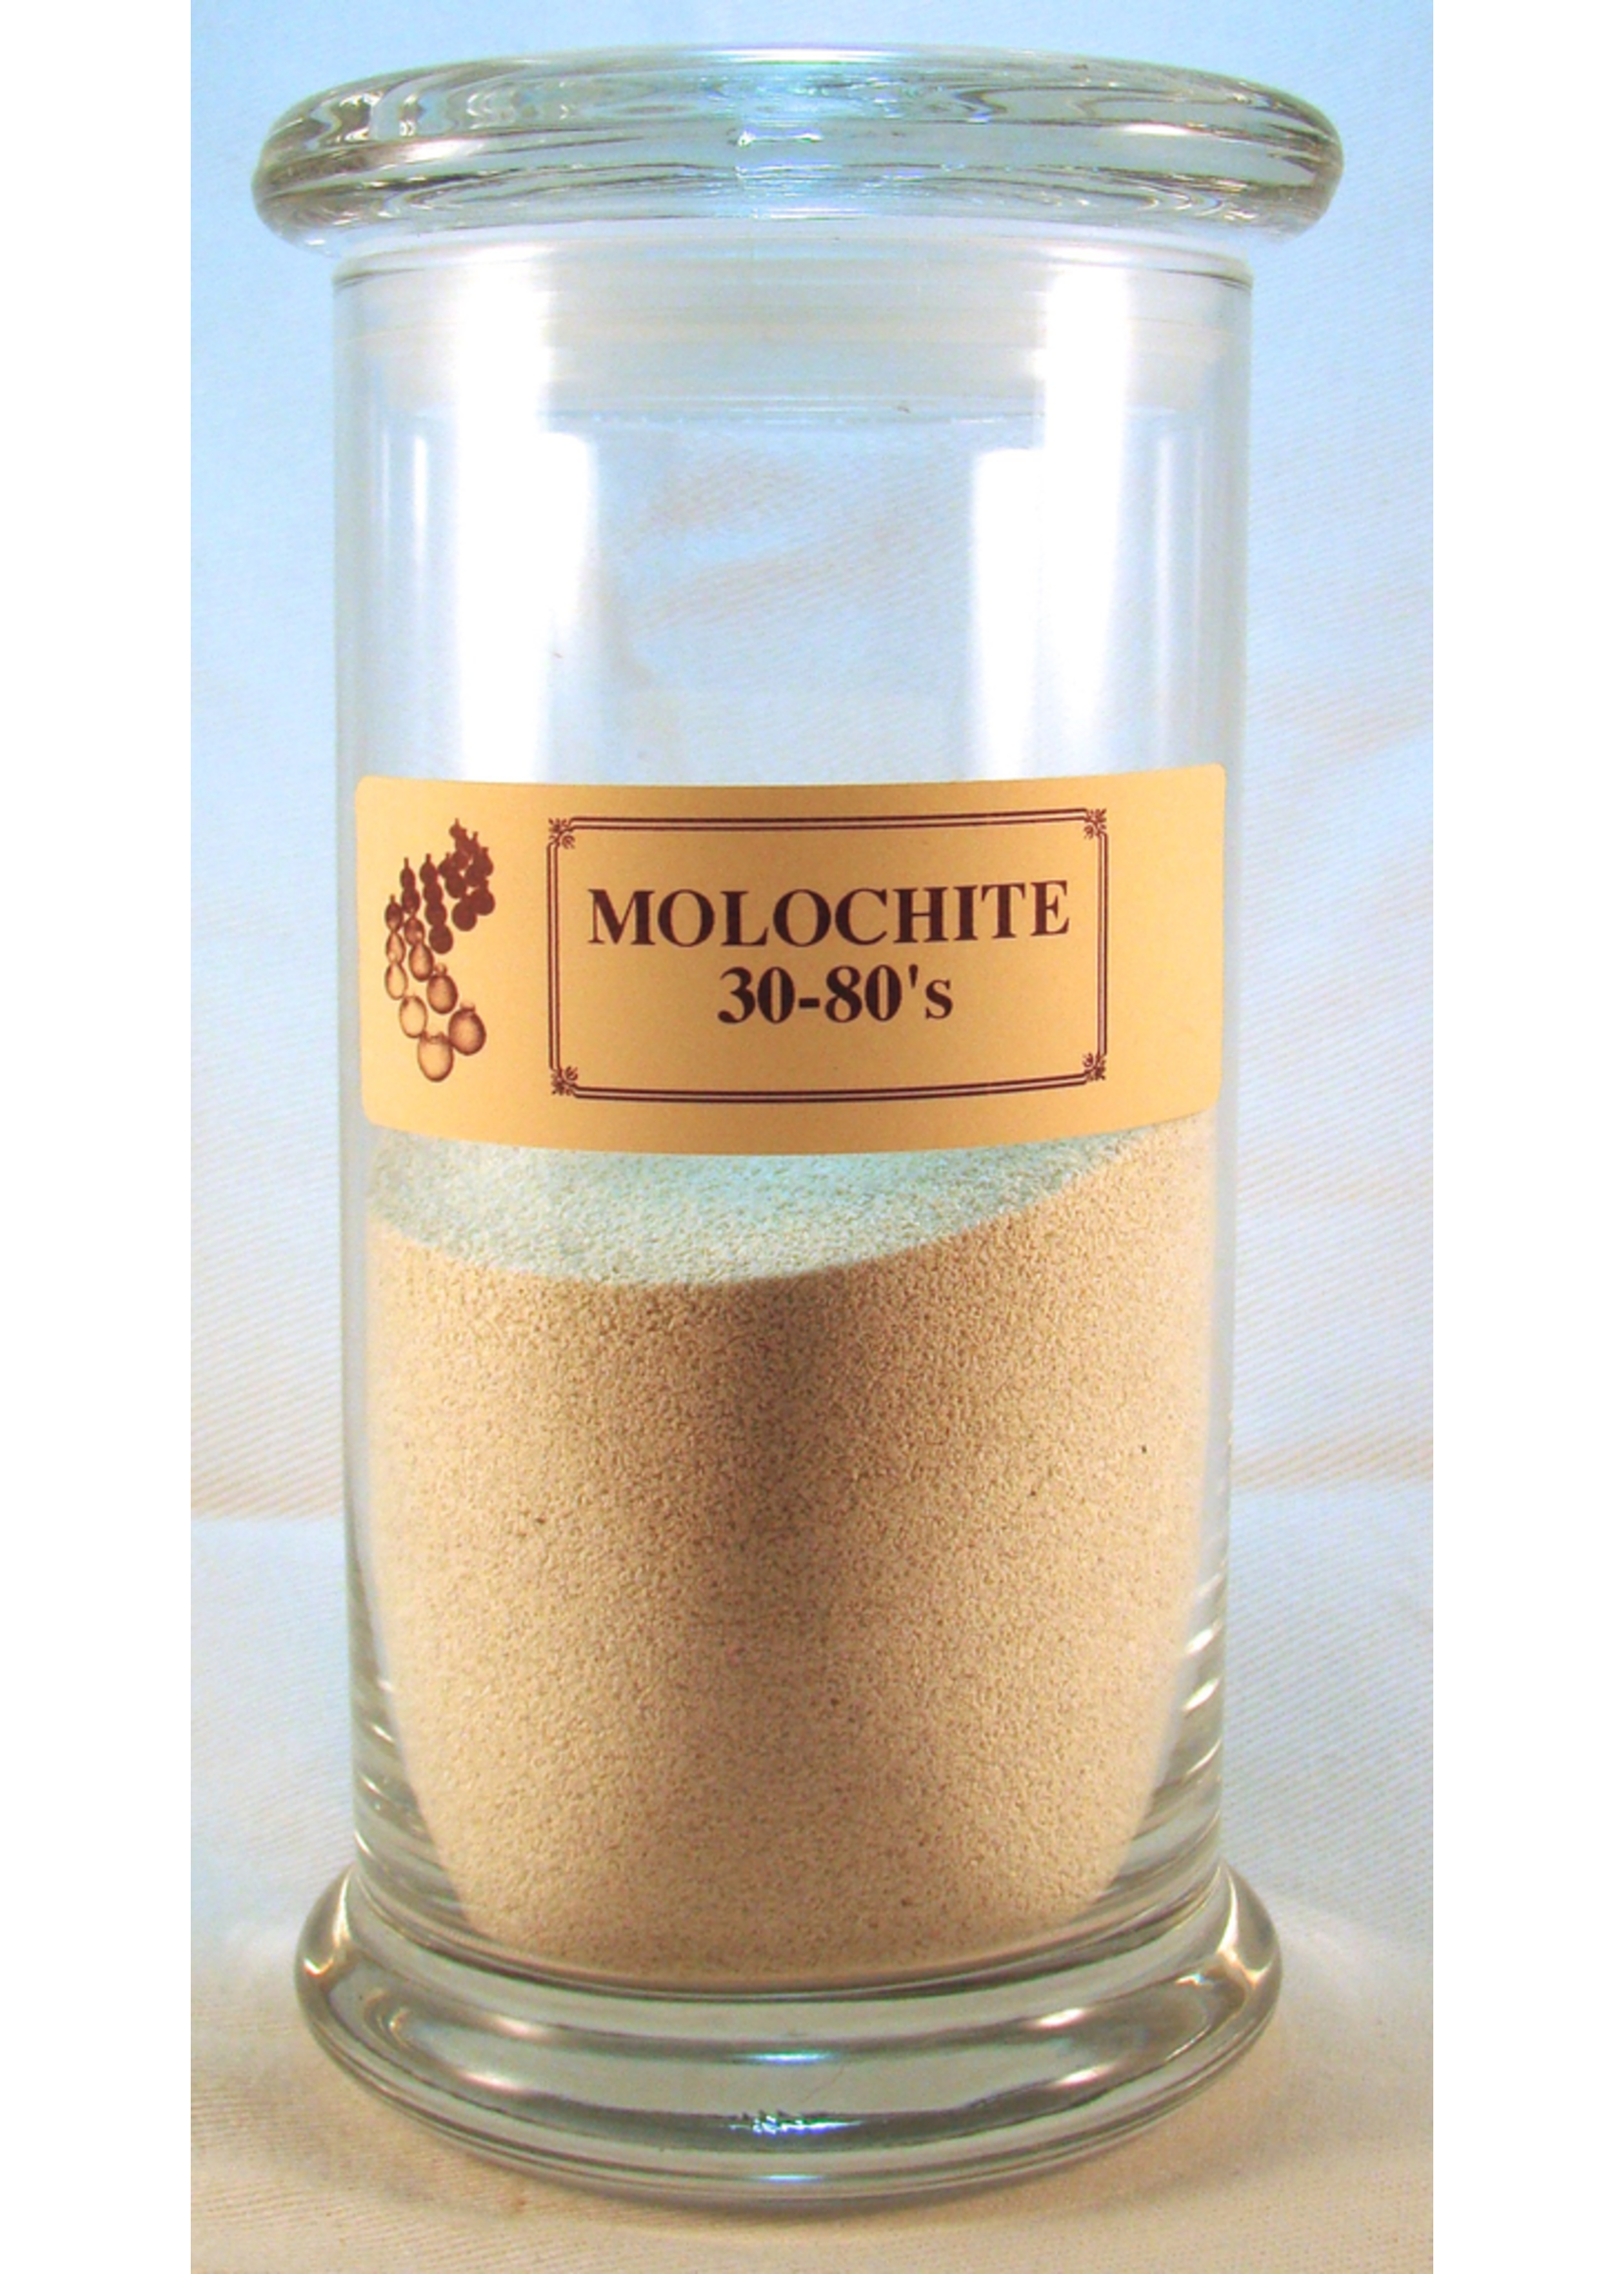 Molochite 30-80